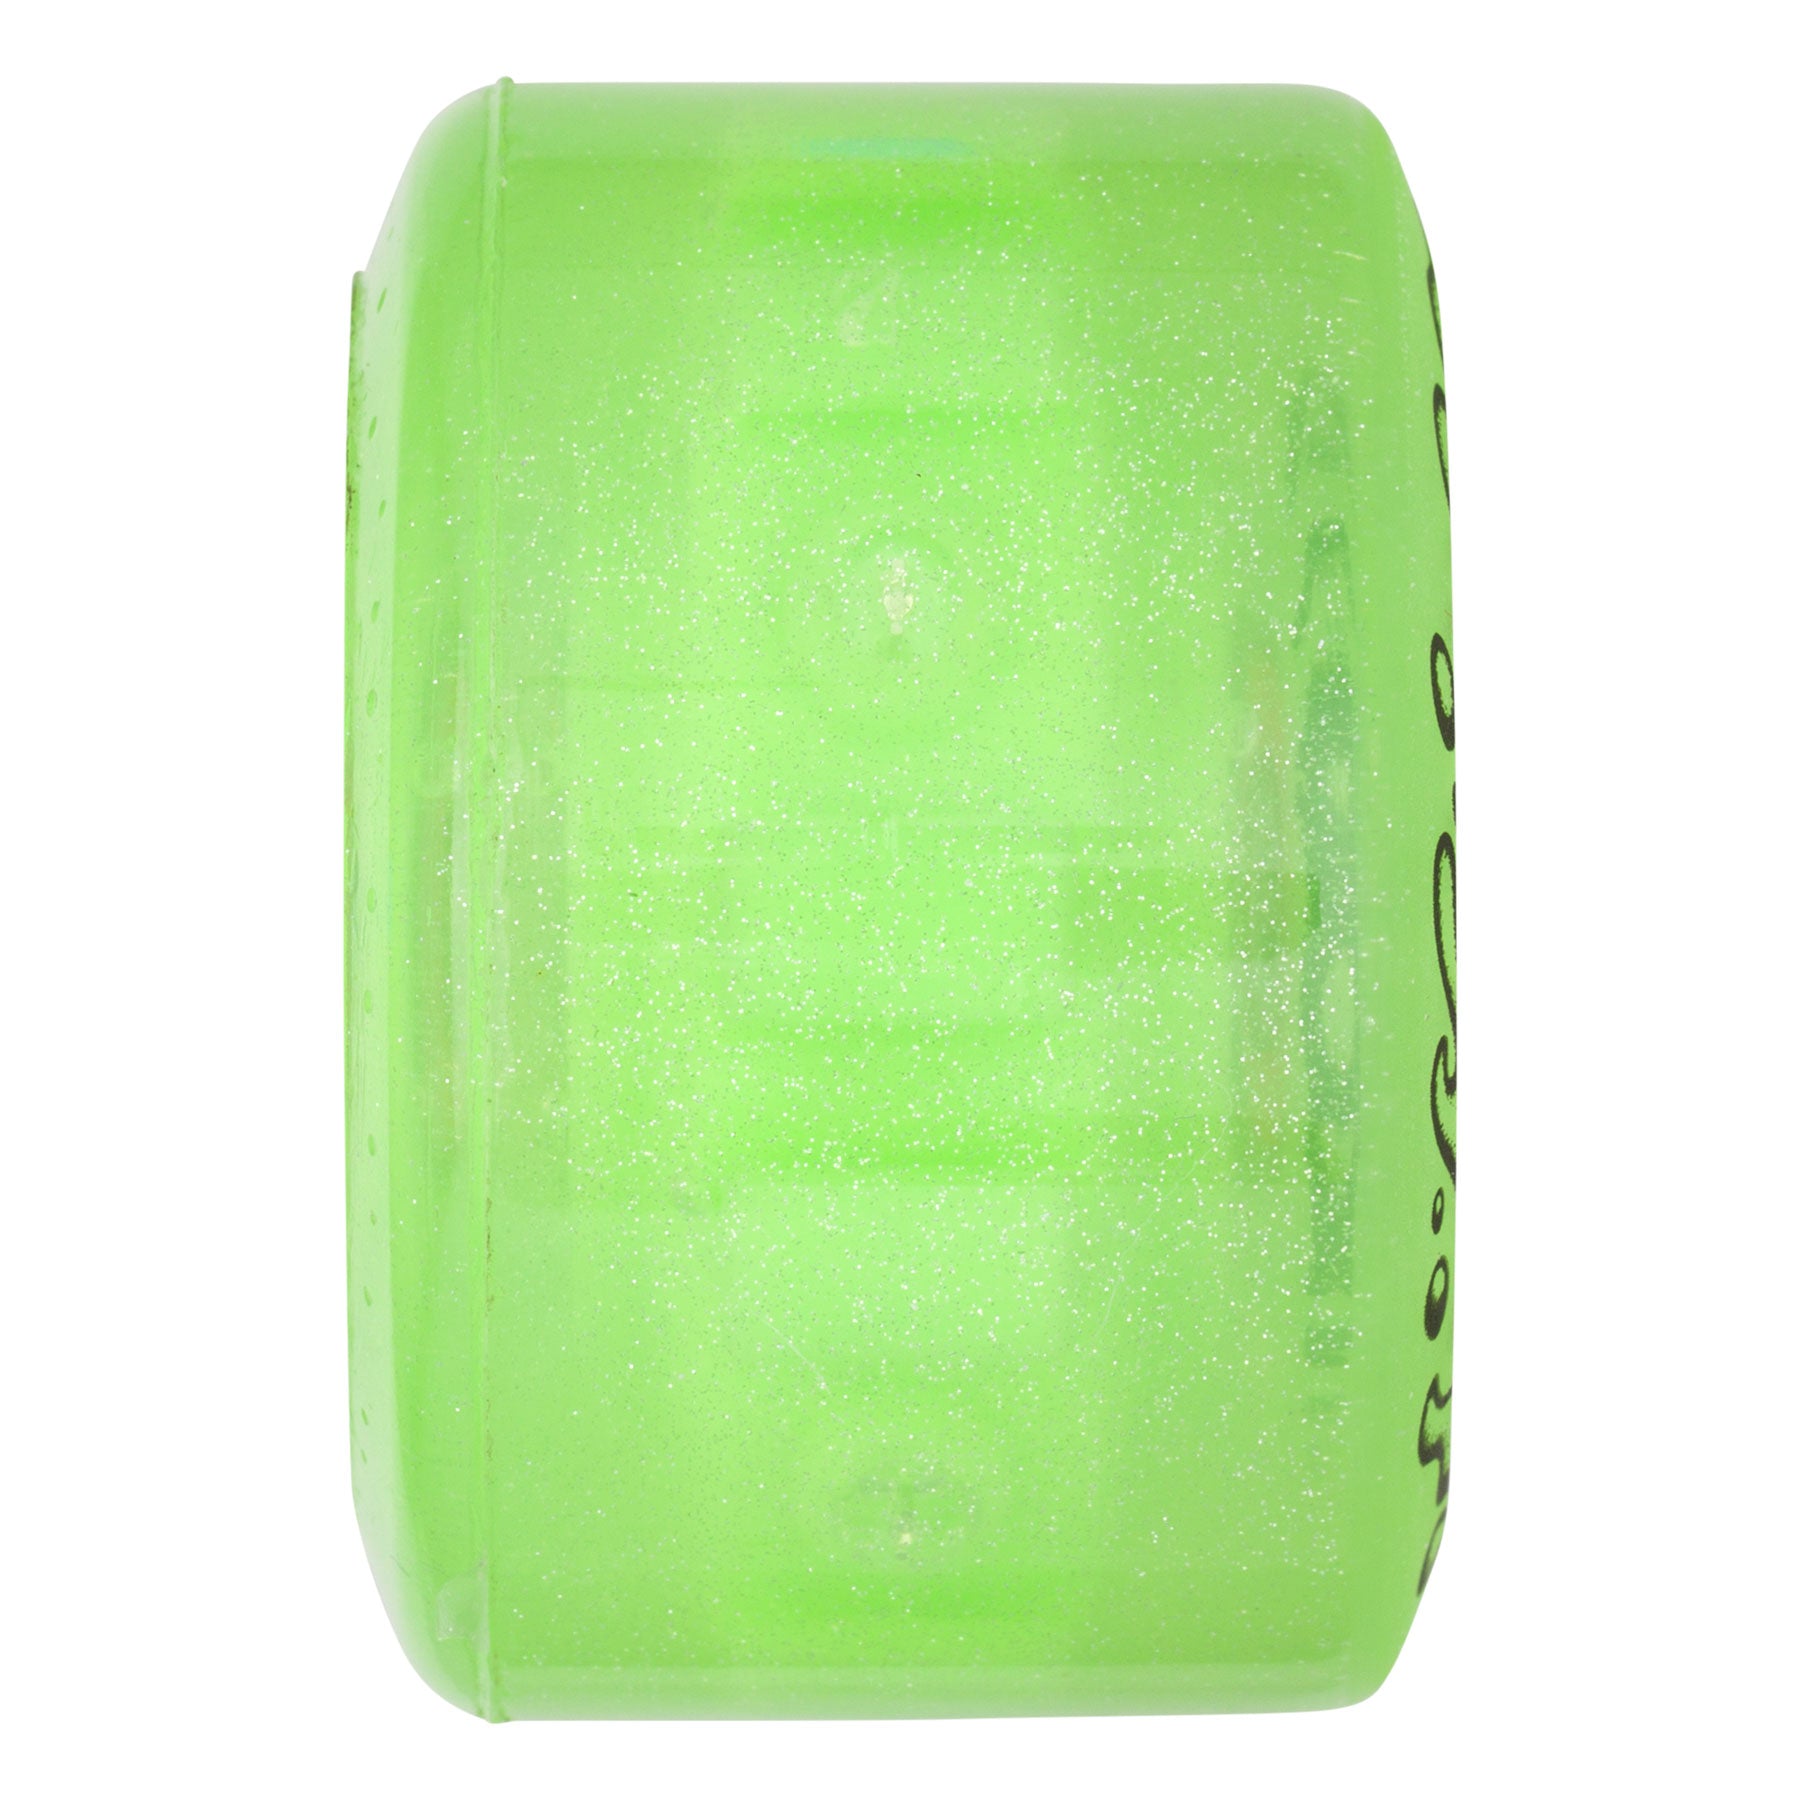 Slime Balls - Light Ups OG Slime Green/Glitter 78A Skateboard Wheels - 60mm